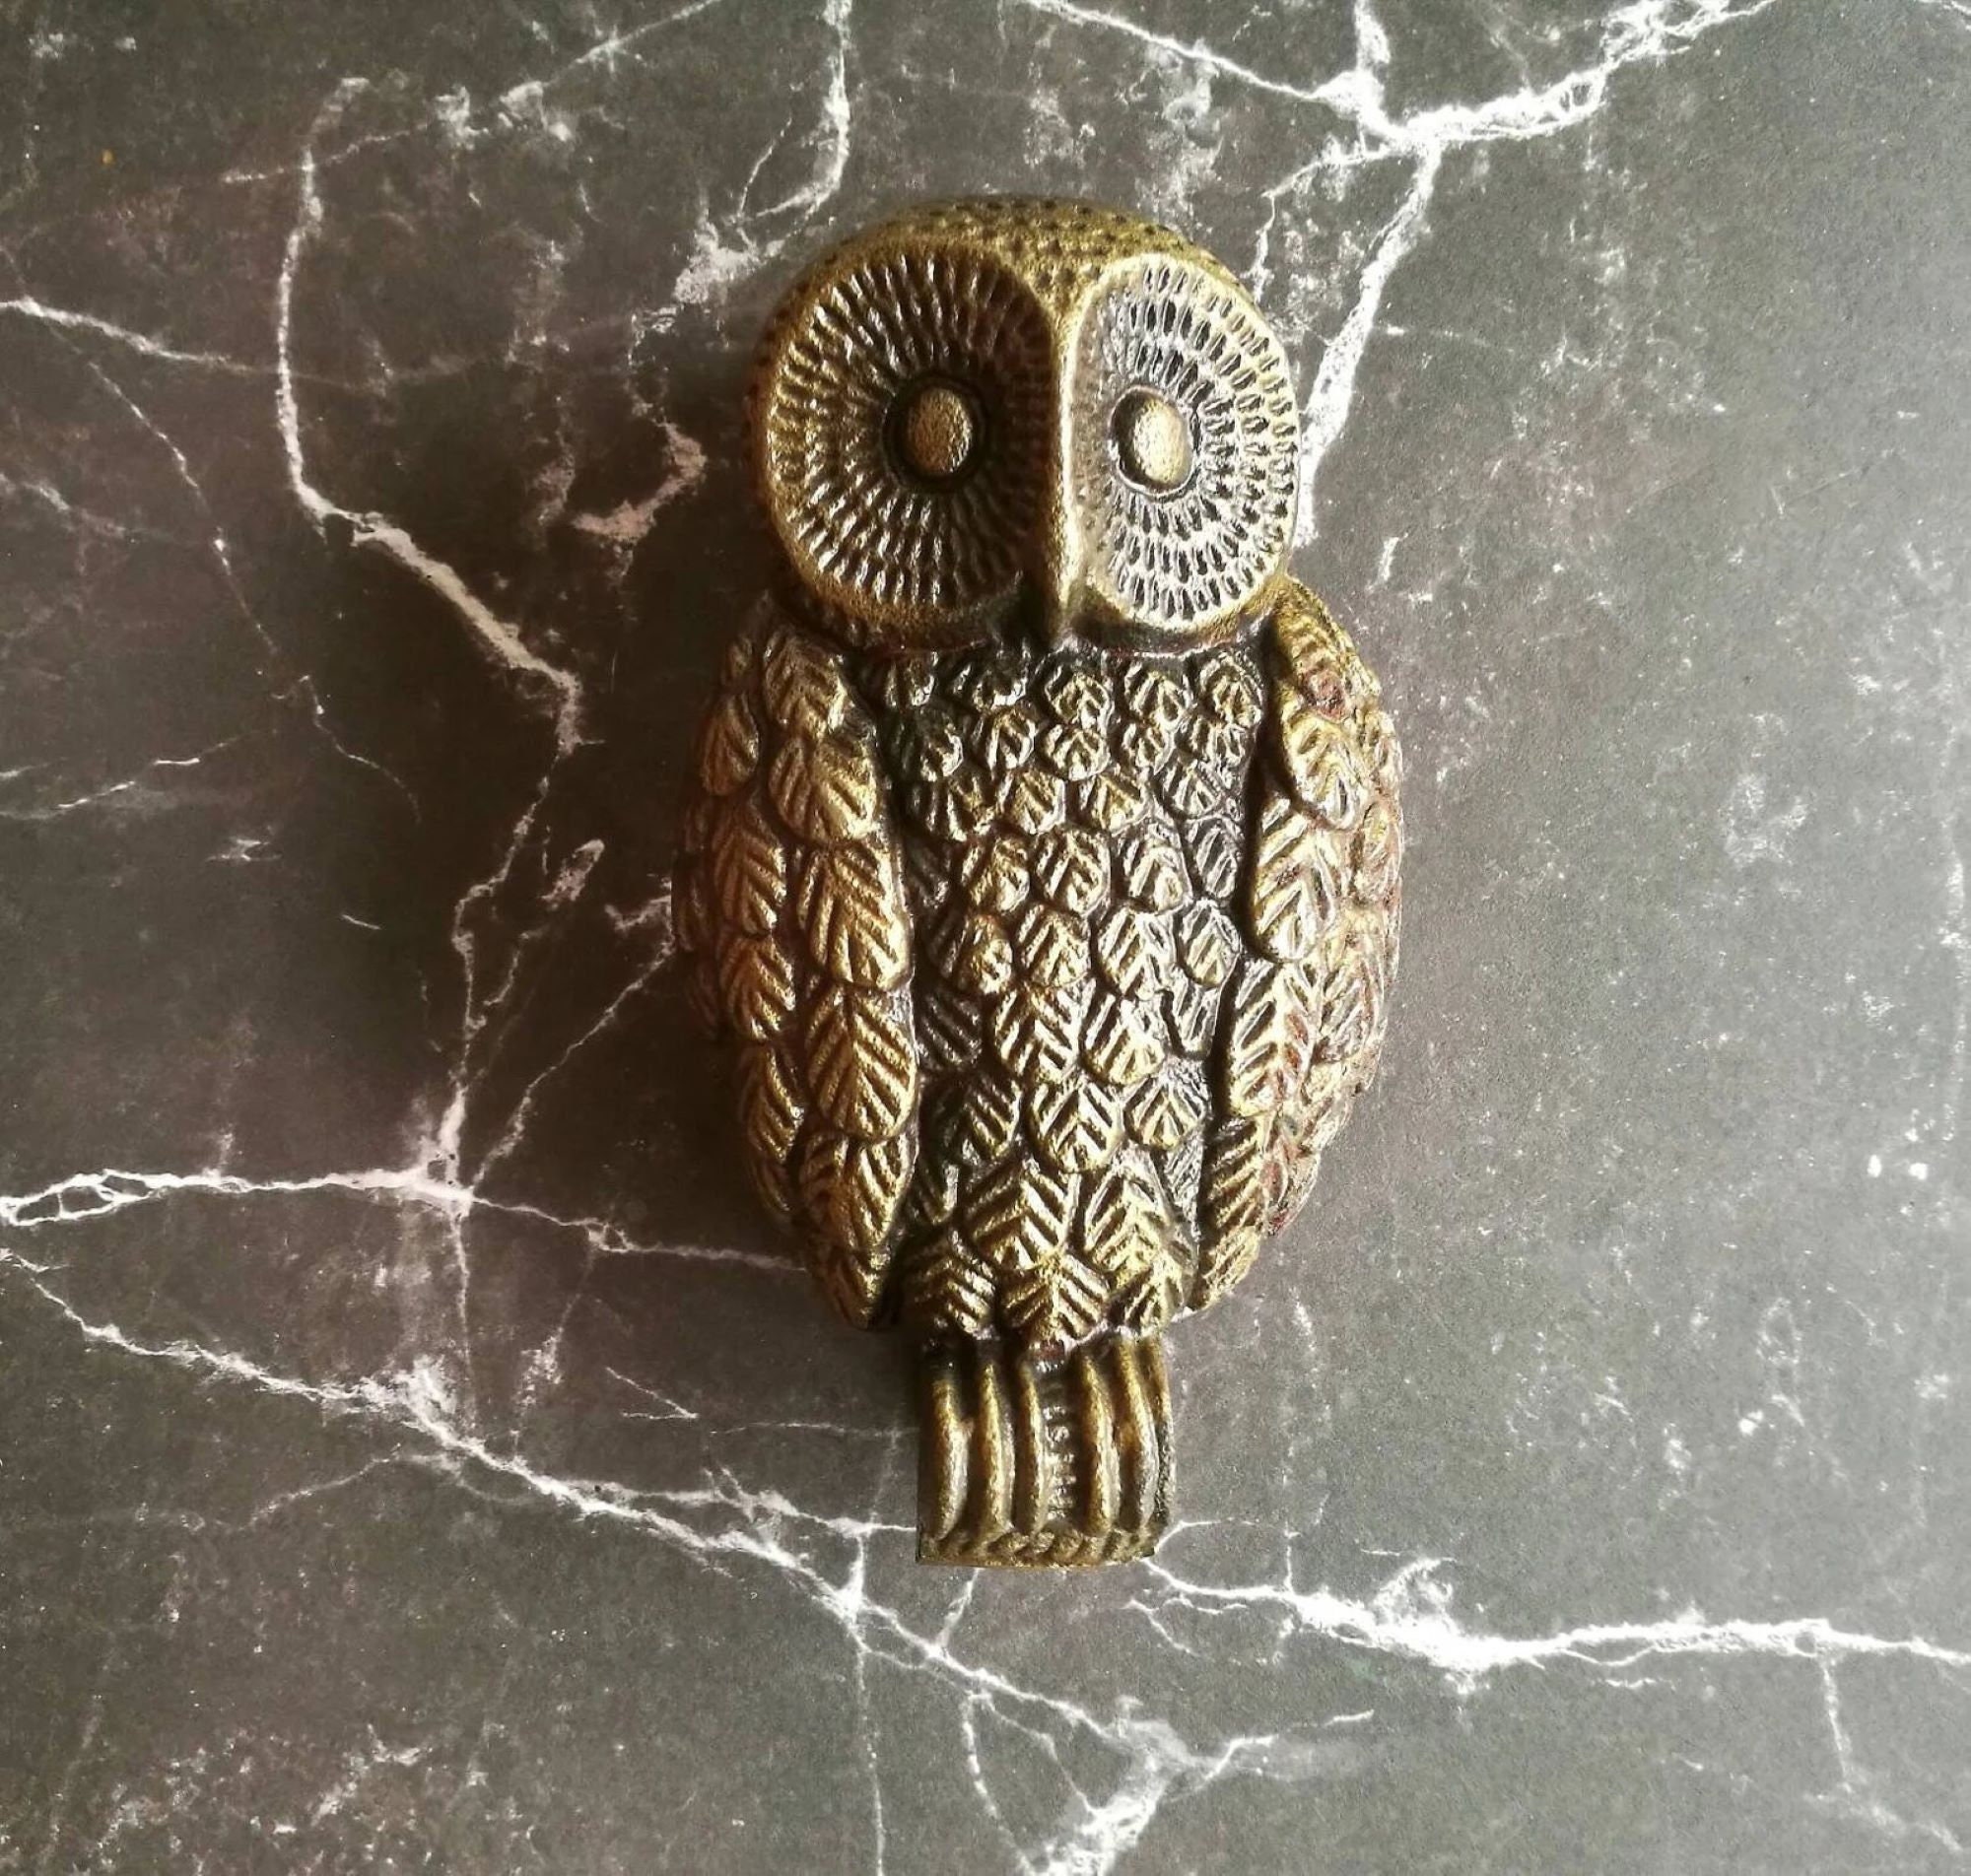 Lovely Mini Owl Branch Cute Crystal Charm Purse Handbag Car Key Keyring  Keychain Party Wedding Birthday Gift - AliExpress